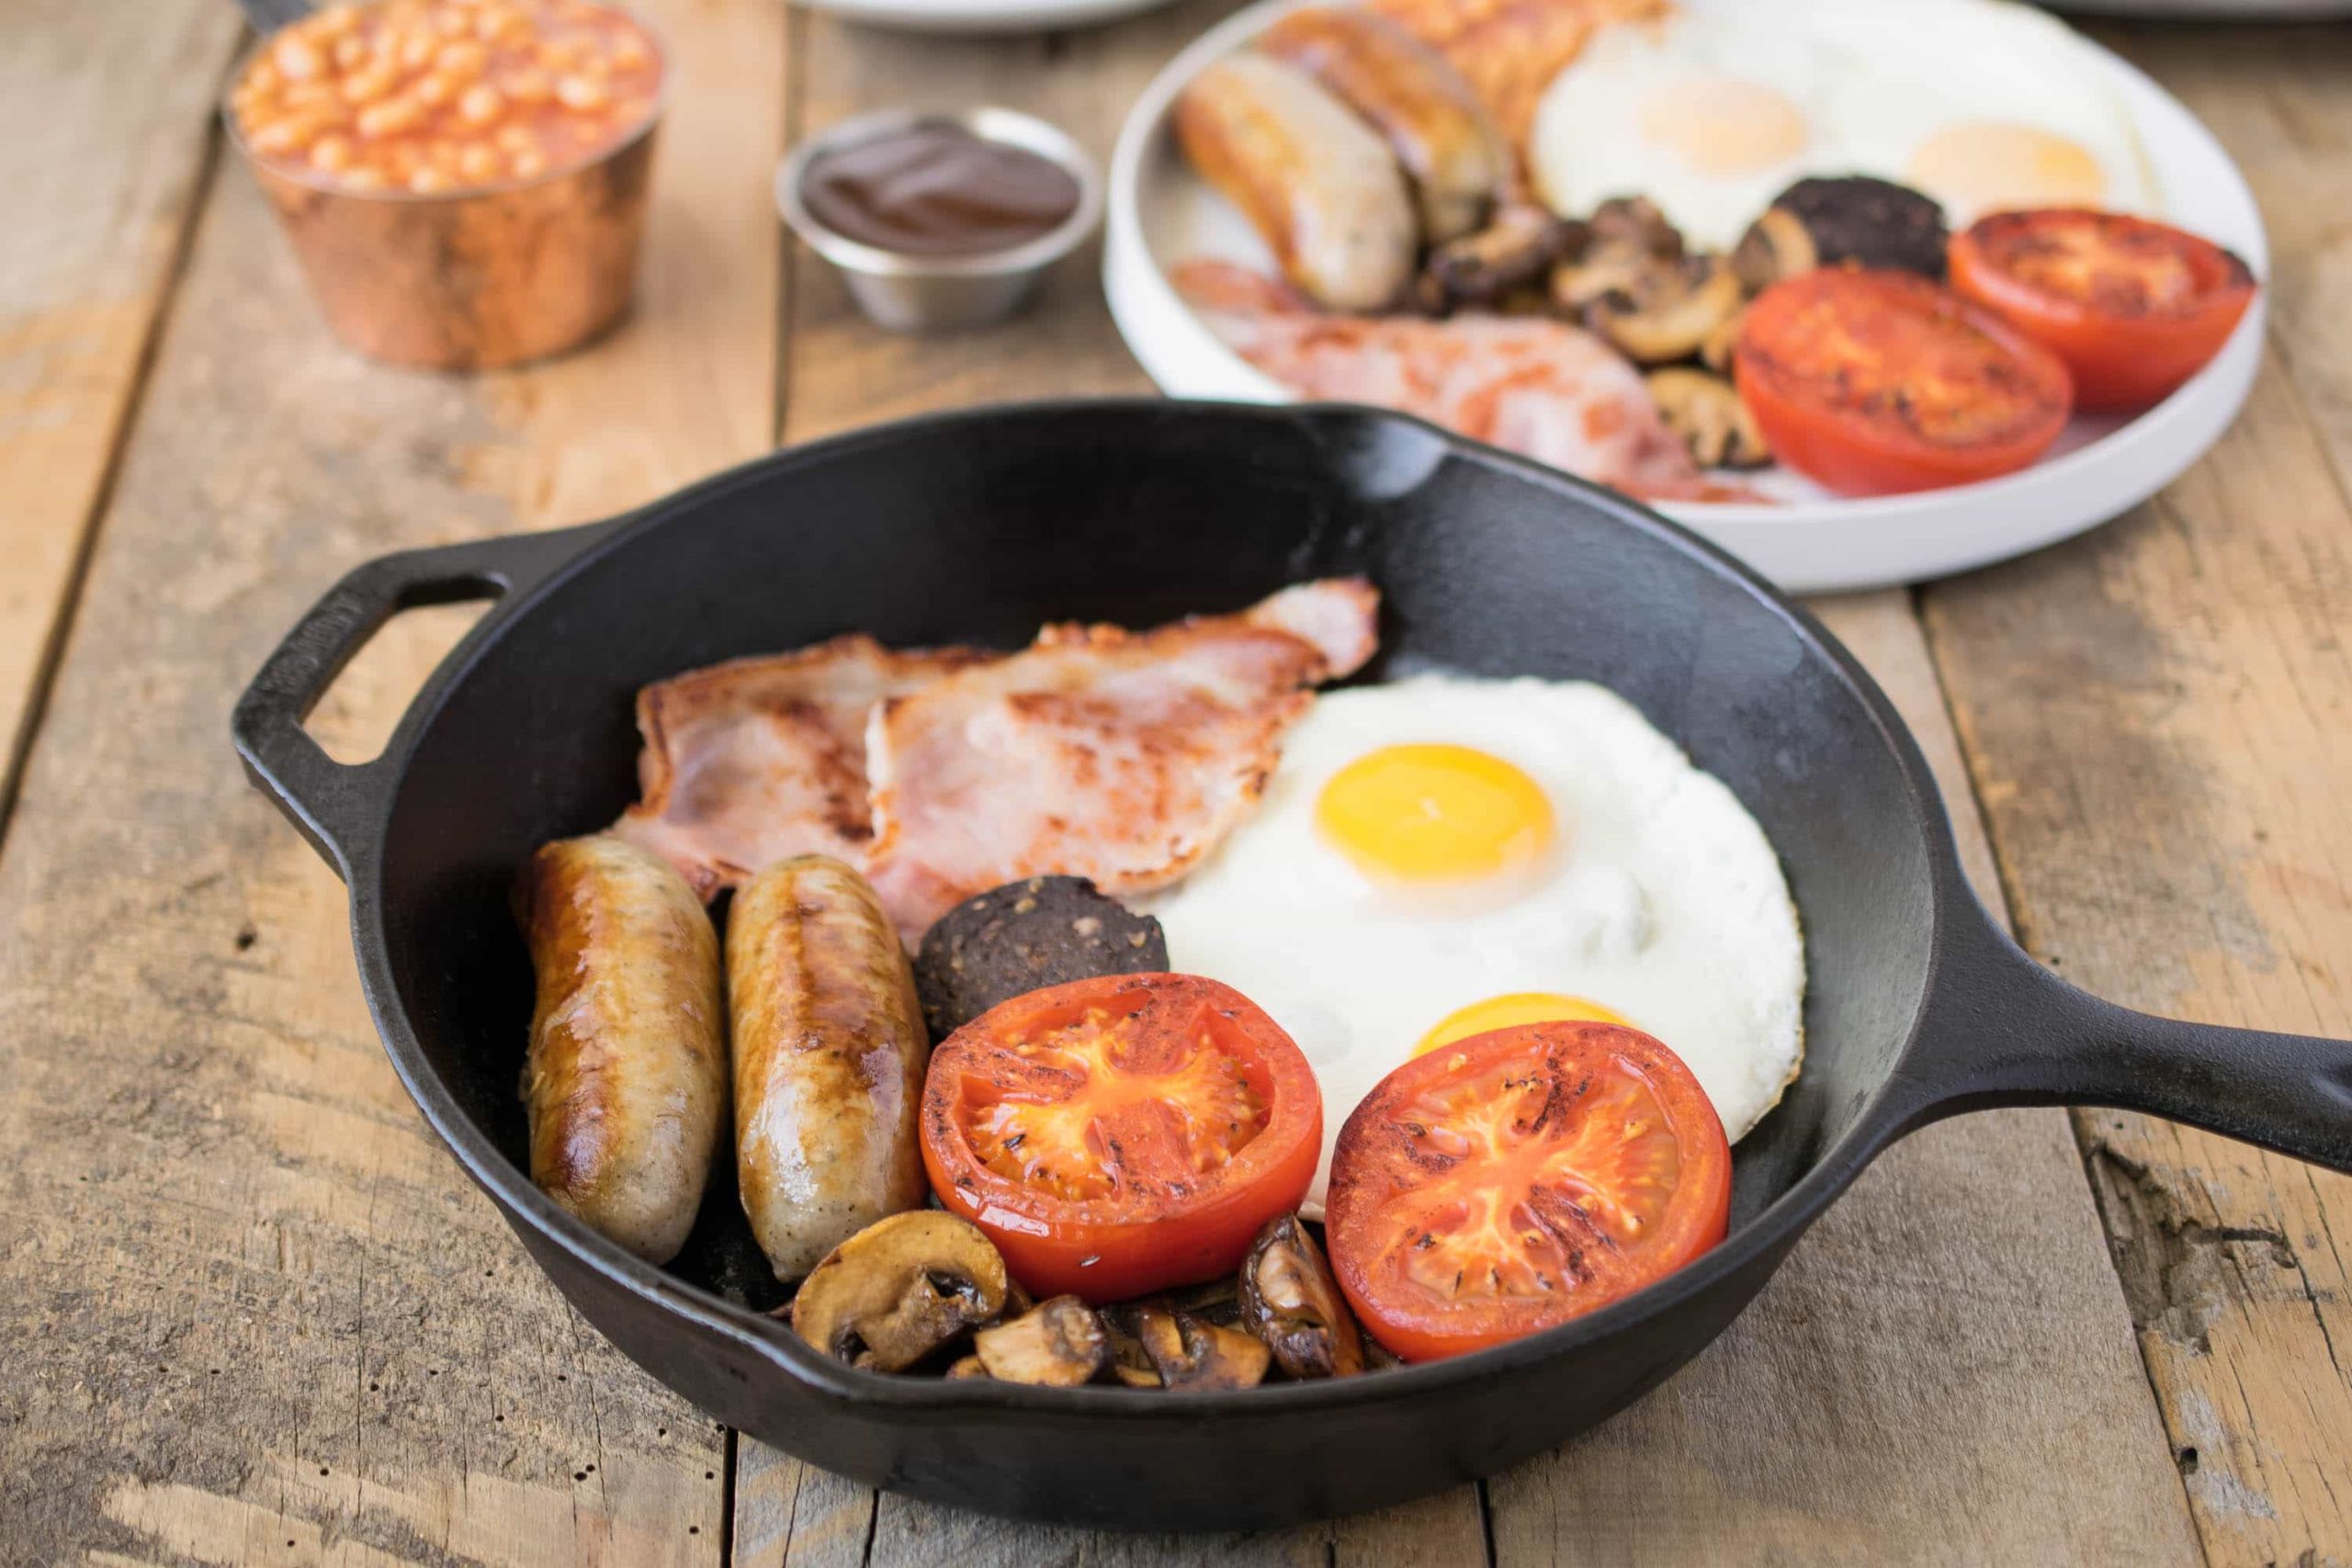 Καταρρίπτεται ο μύθος για το πρωινό: Δείτε τις 5 τροφές που πρέπει να αποφεύγετε!